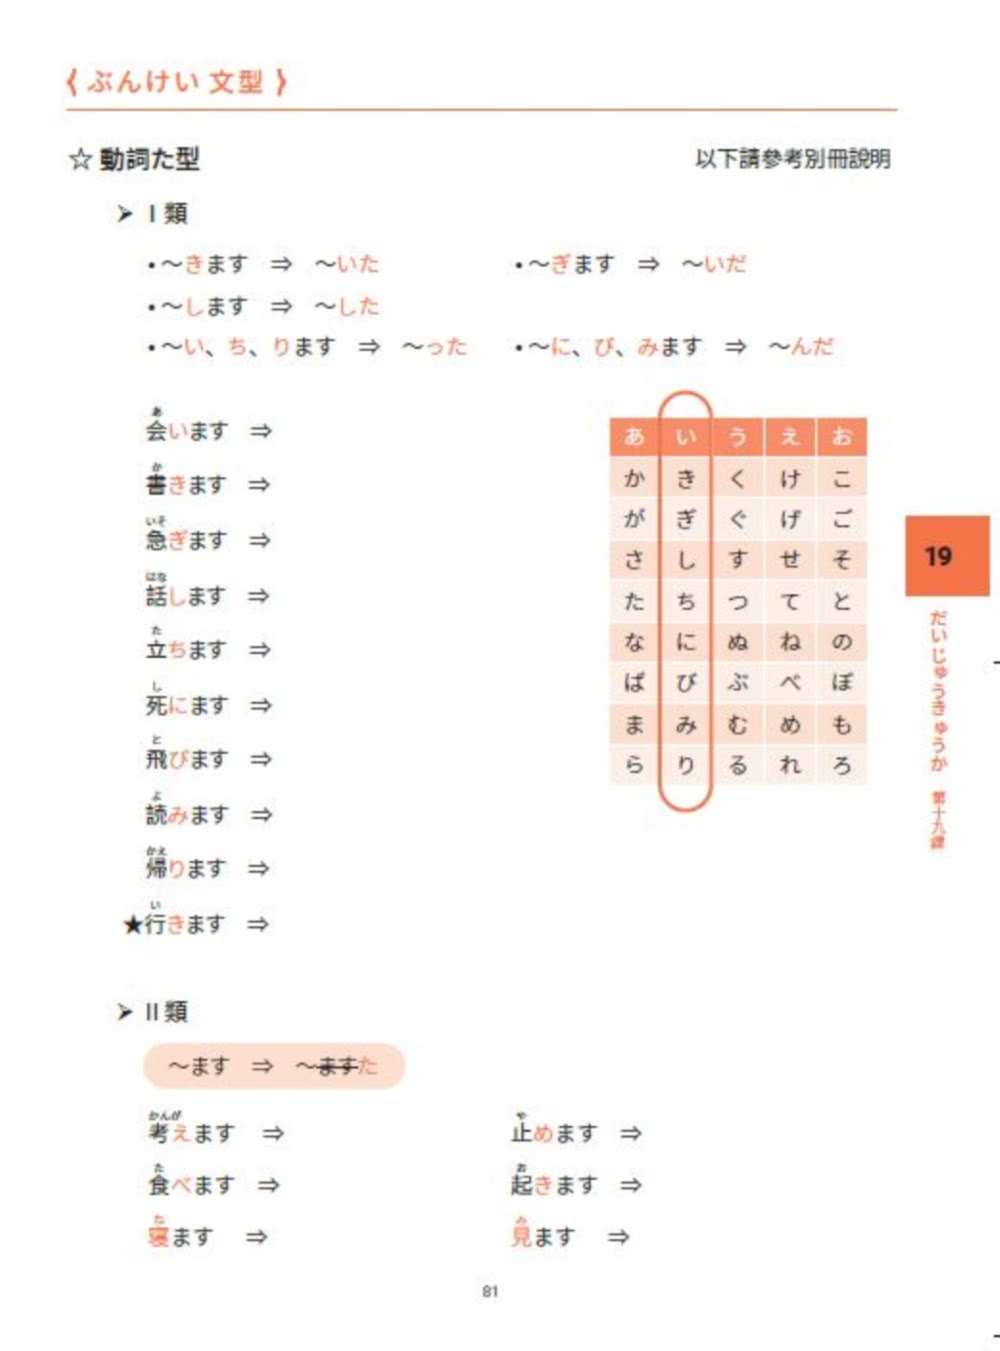 大家一起學習日文吧！王可樂日語初級直達車2：詳盡文法、大量練習題、豐富附錄